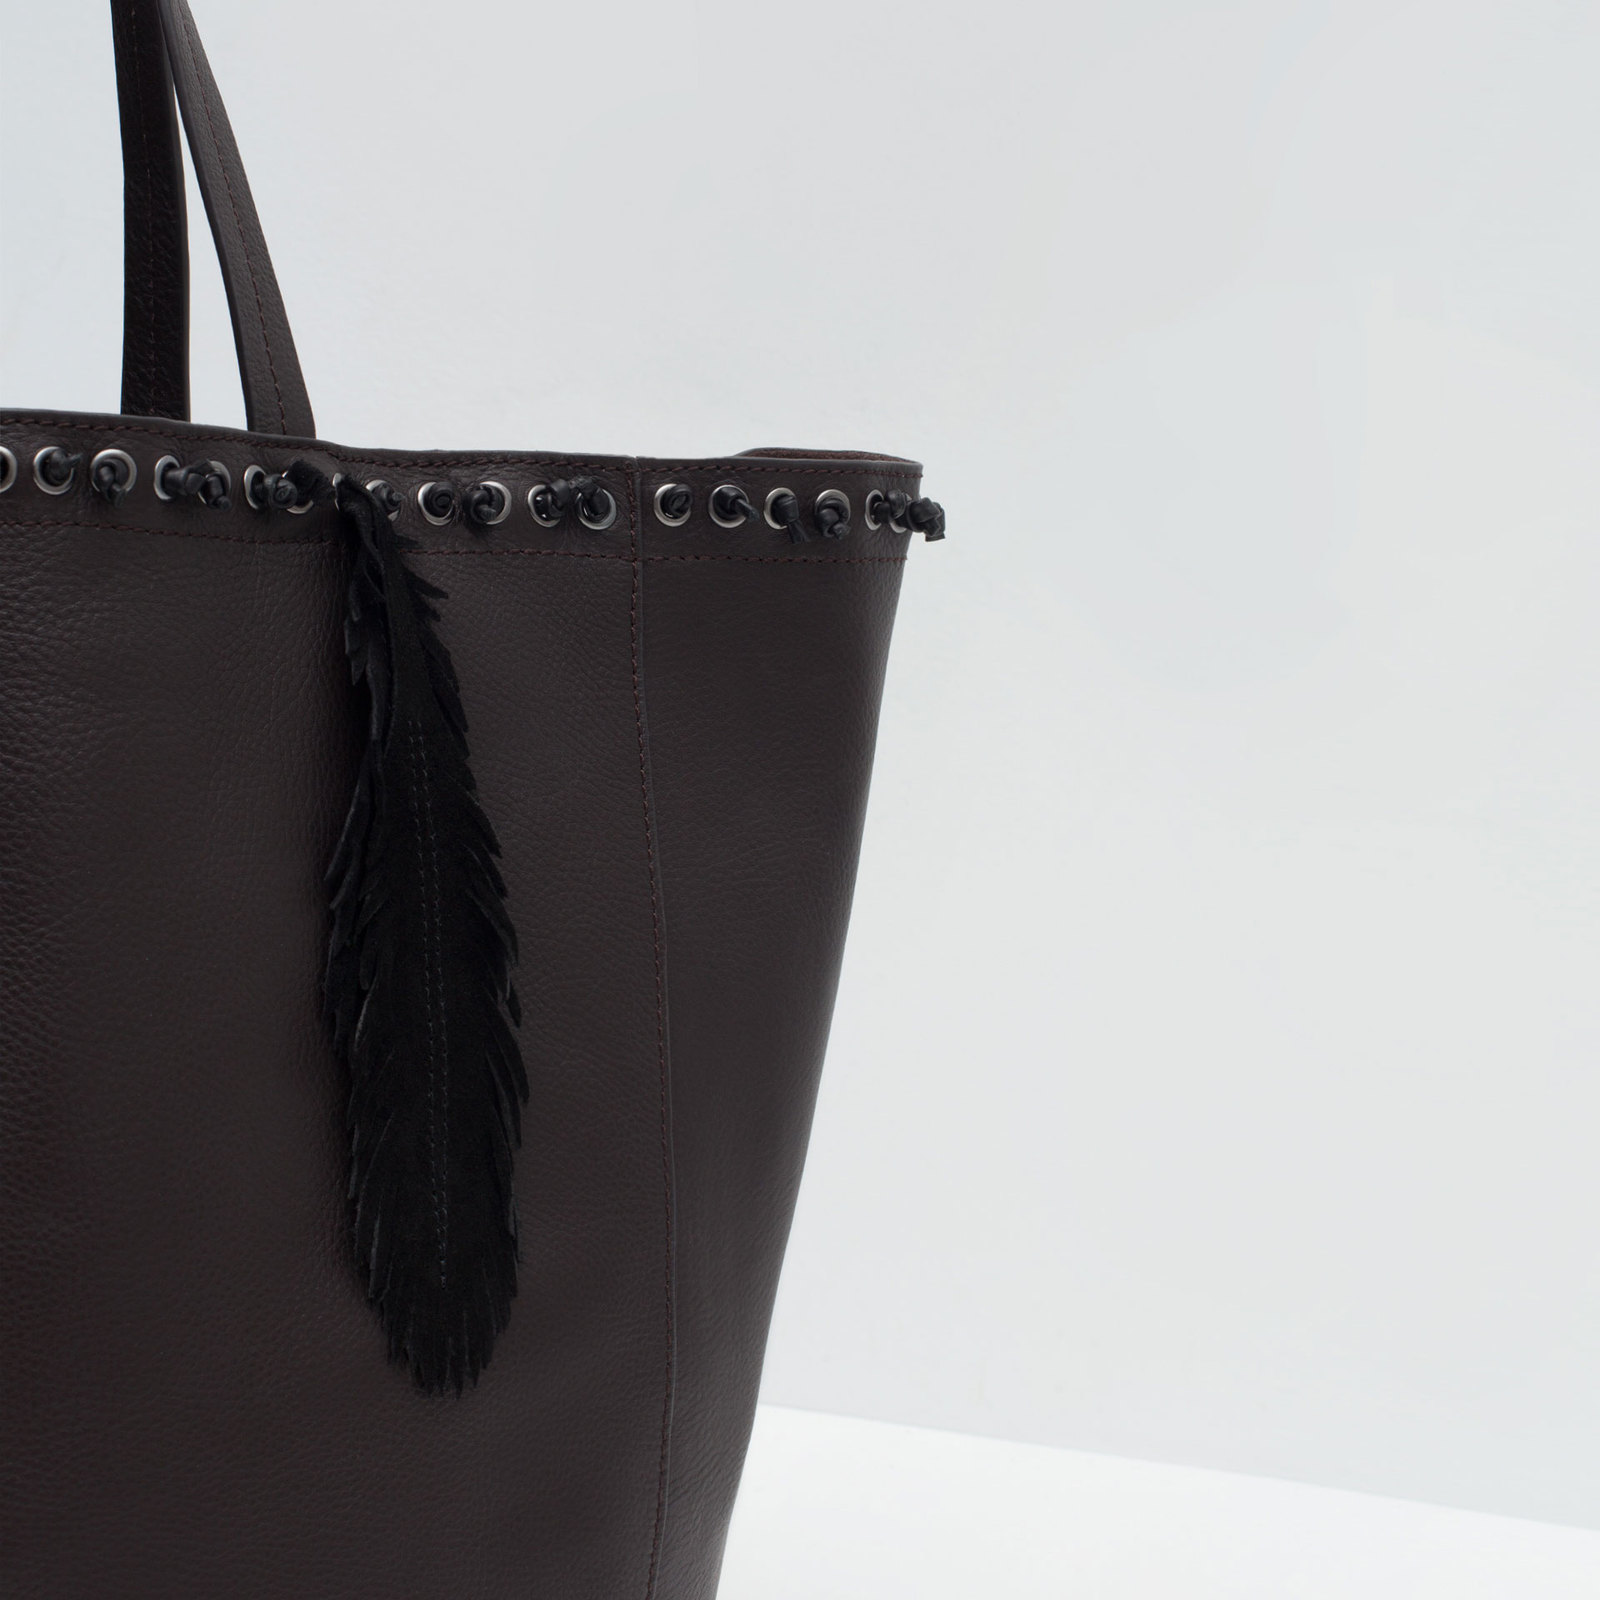 Zara csábos női fekete bevásárló táska 2015.10.15 #88751 fotója